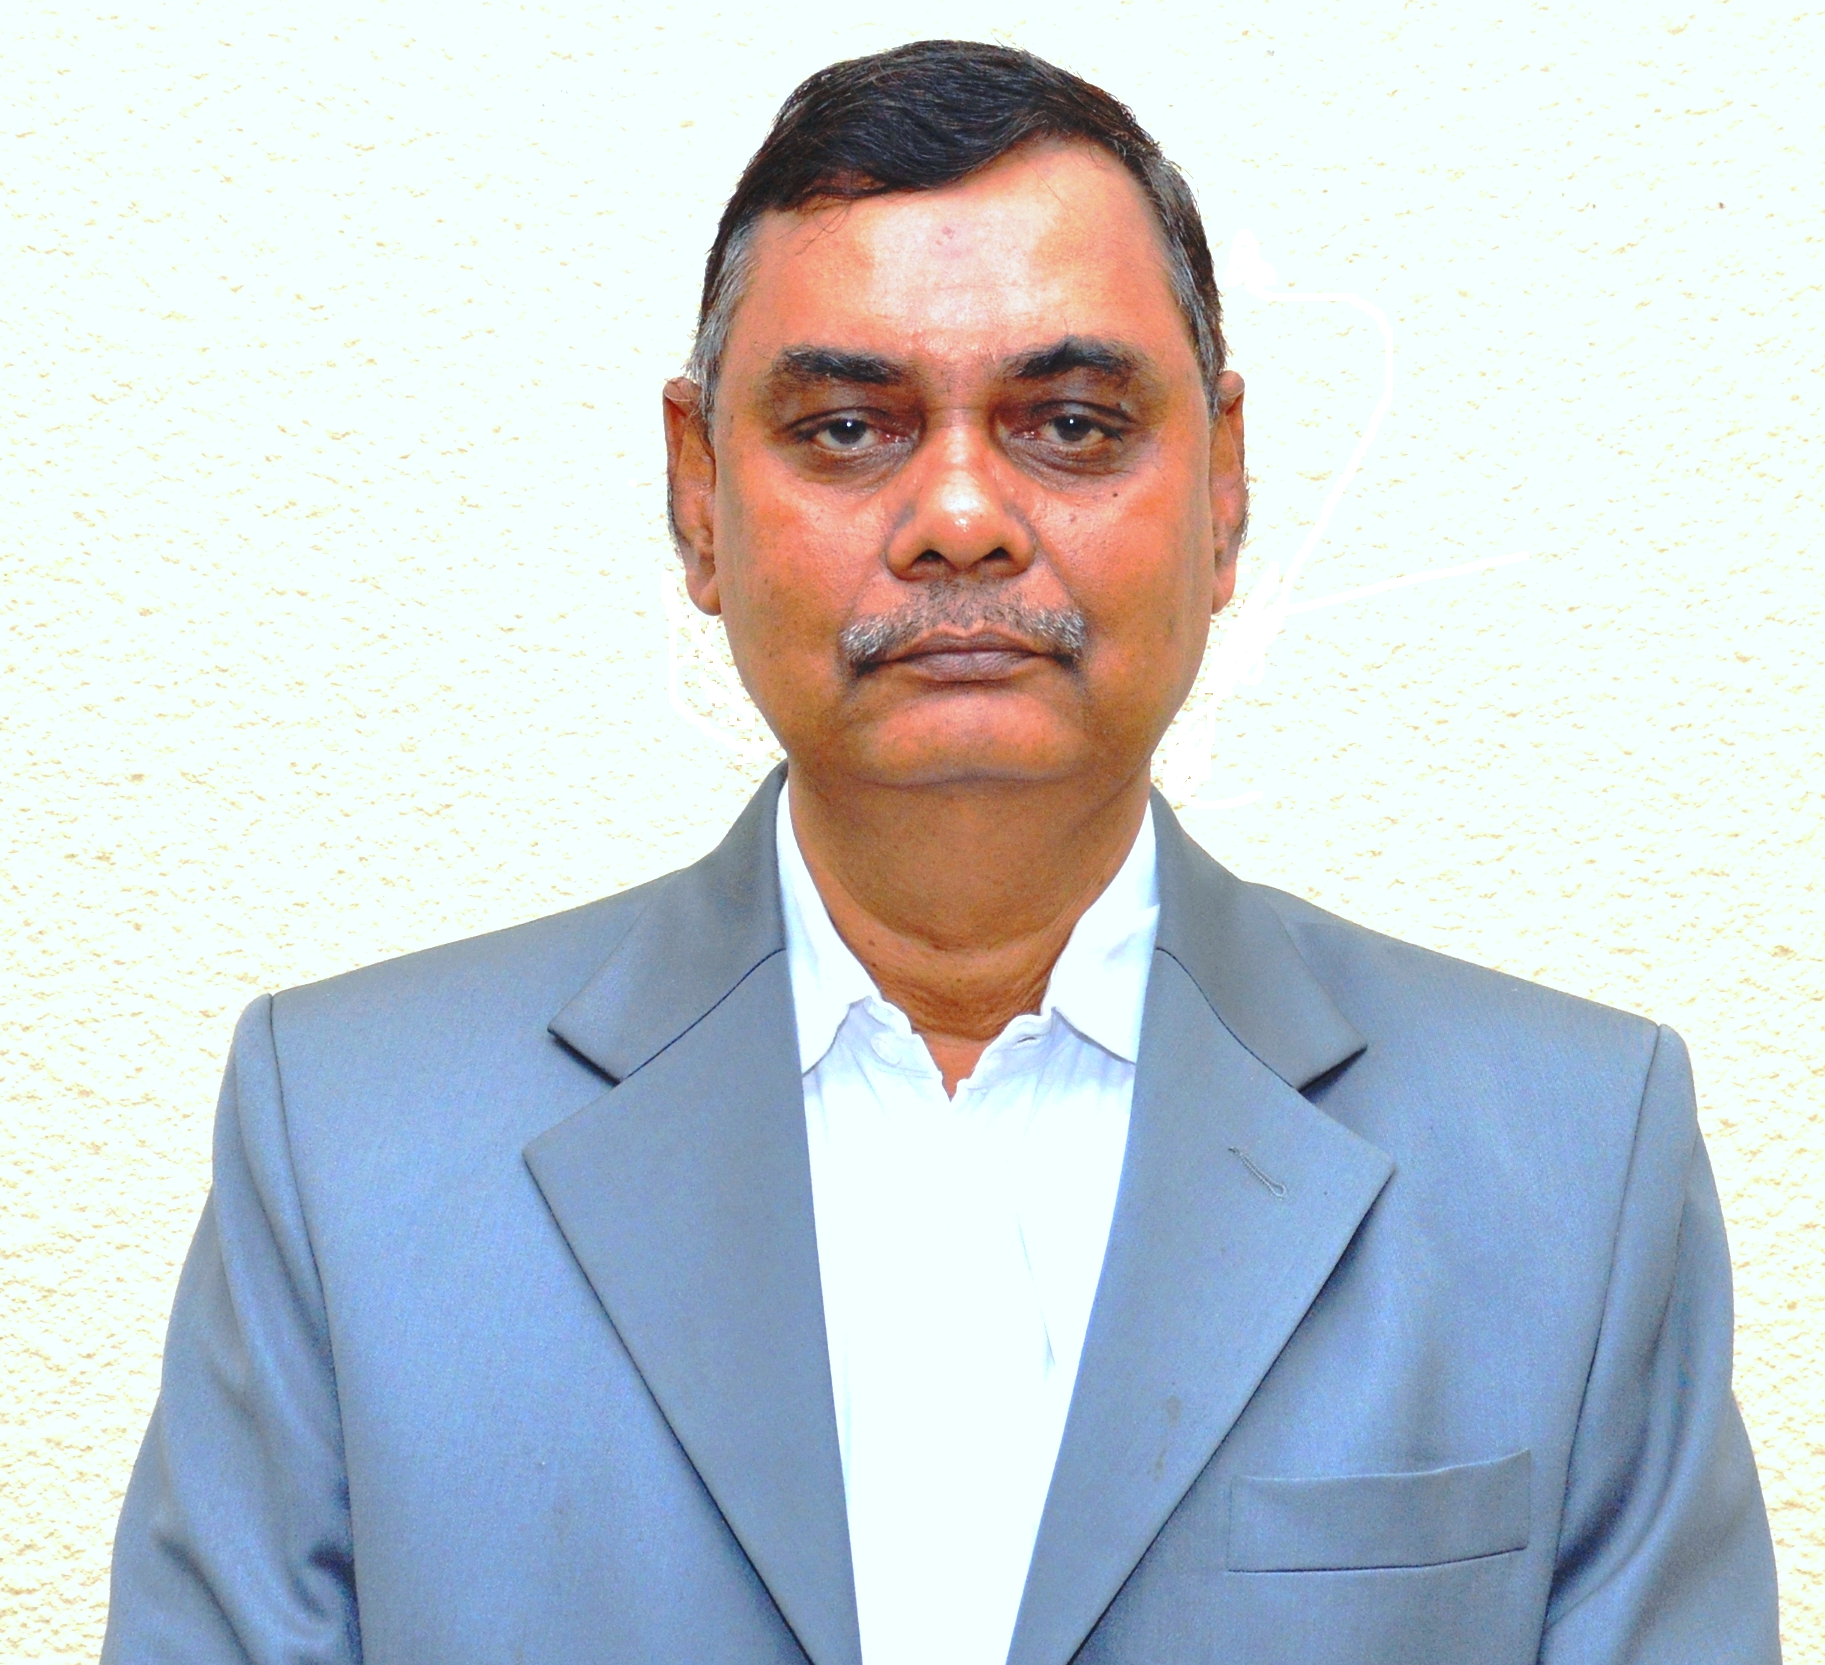 Dr. Faruque-Uz-Zaman Chowdhury